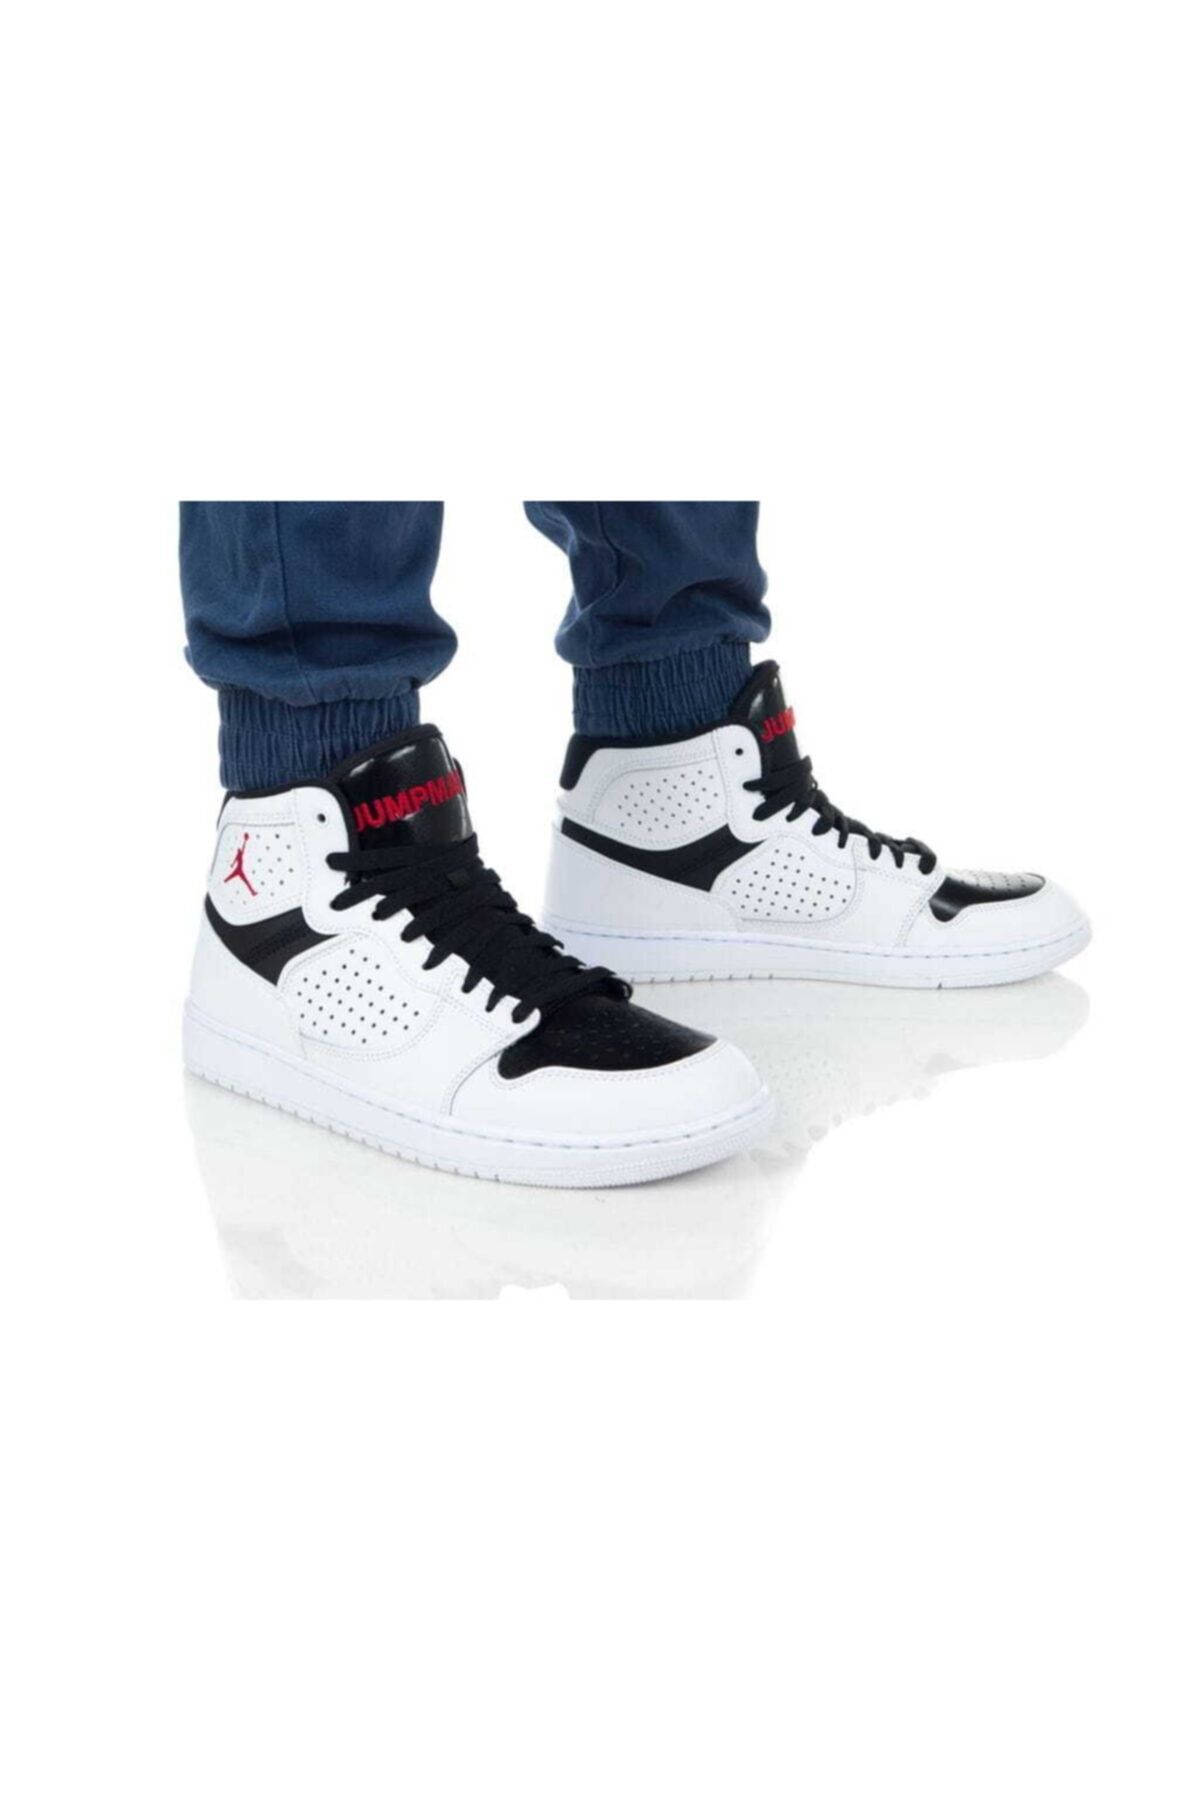 Nike Erkek Jordan Access Spor Ayakkabı